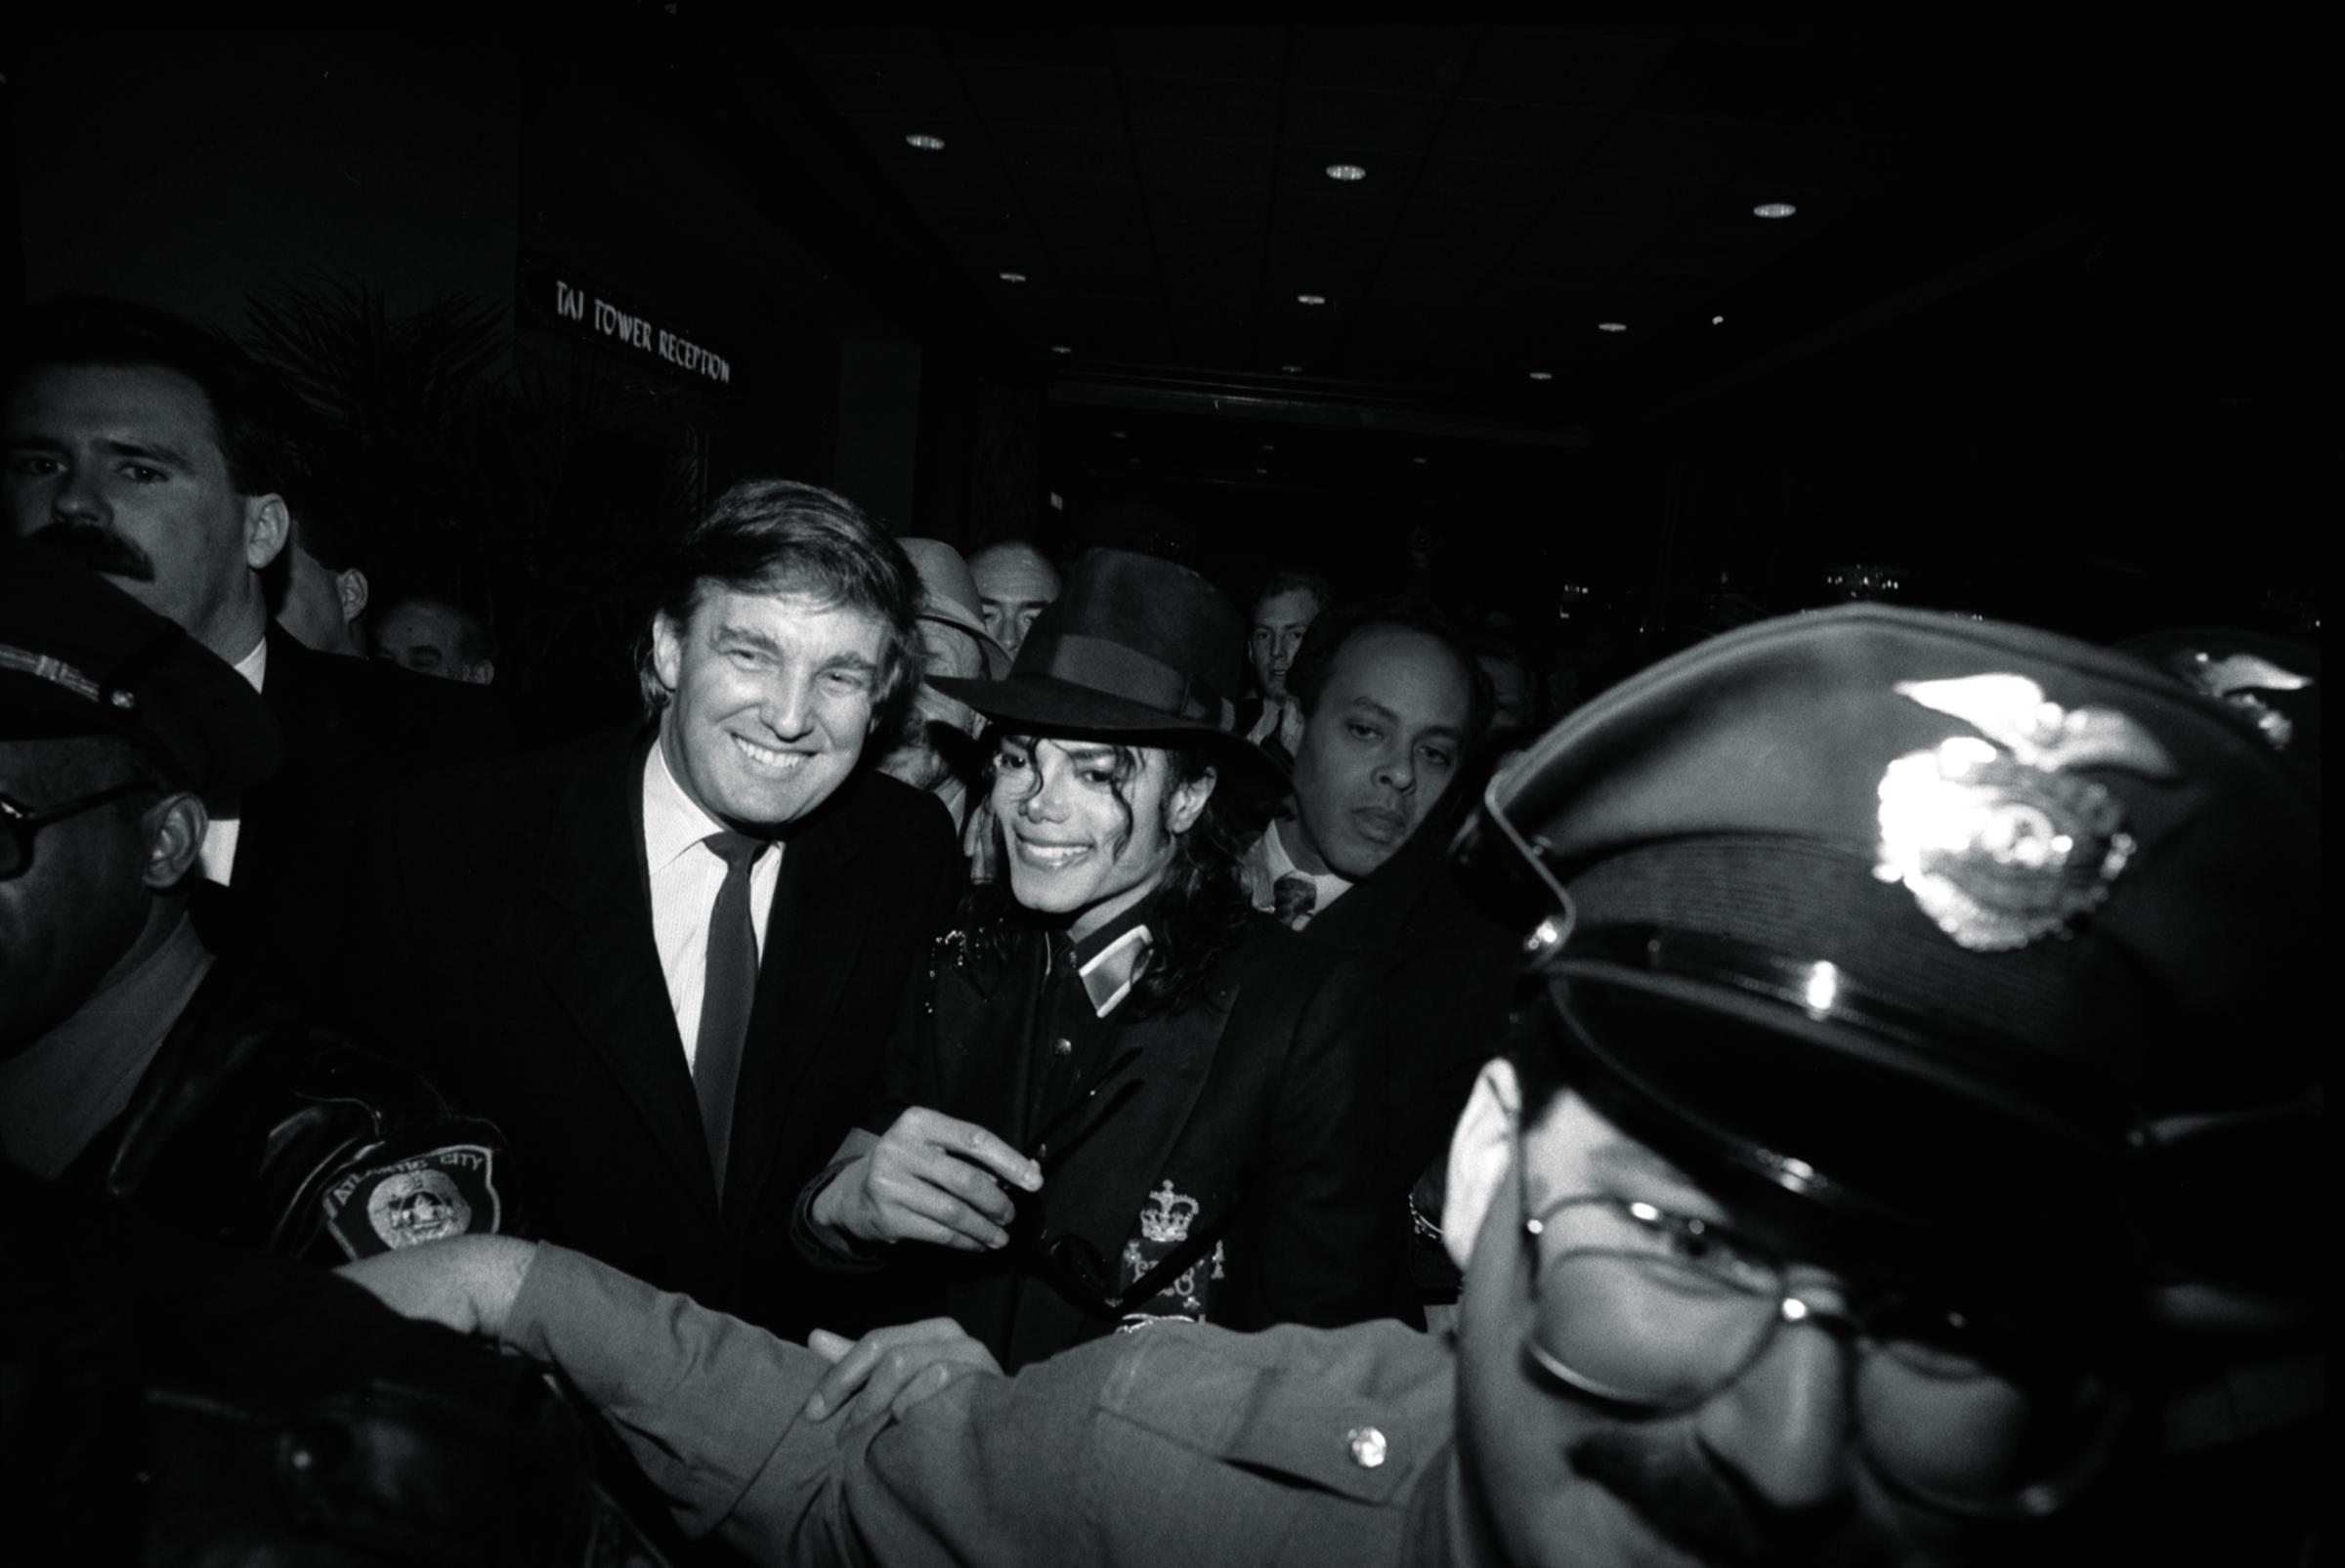 1990 Trump and Michael Jackson, his guest, at the grand opening of the Trump Taj Mahal casino resort in Atlantic City.